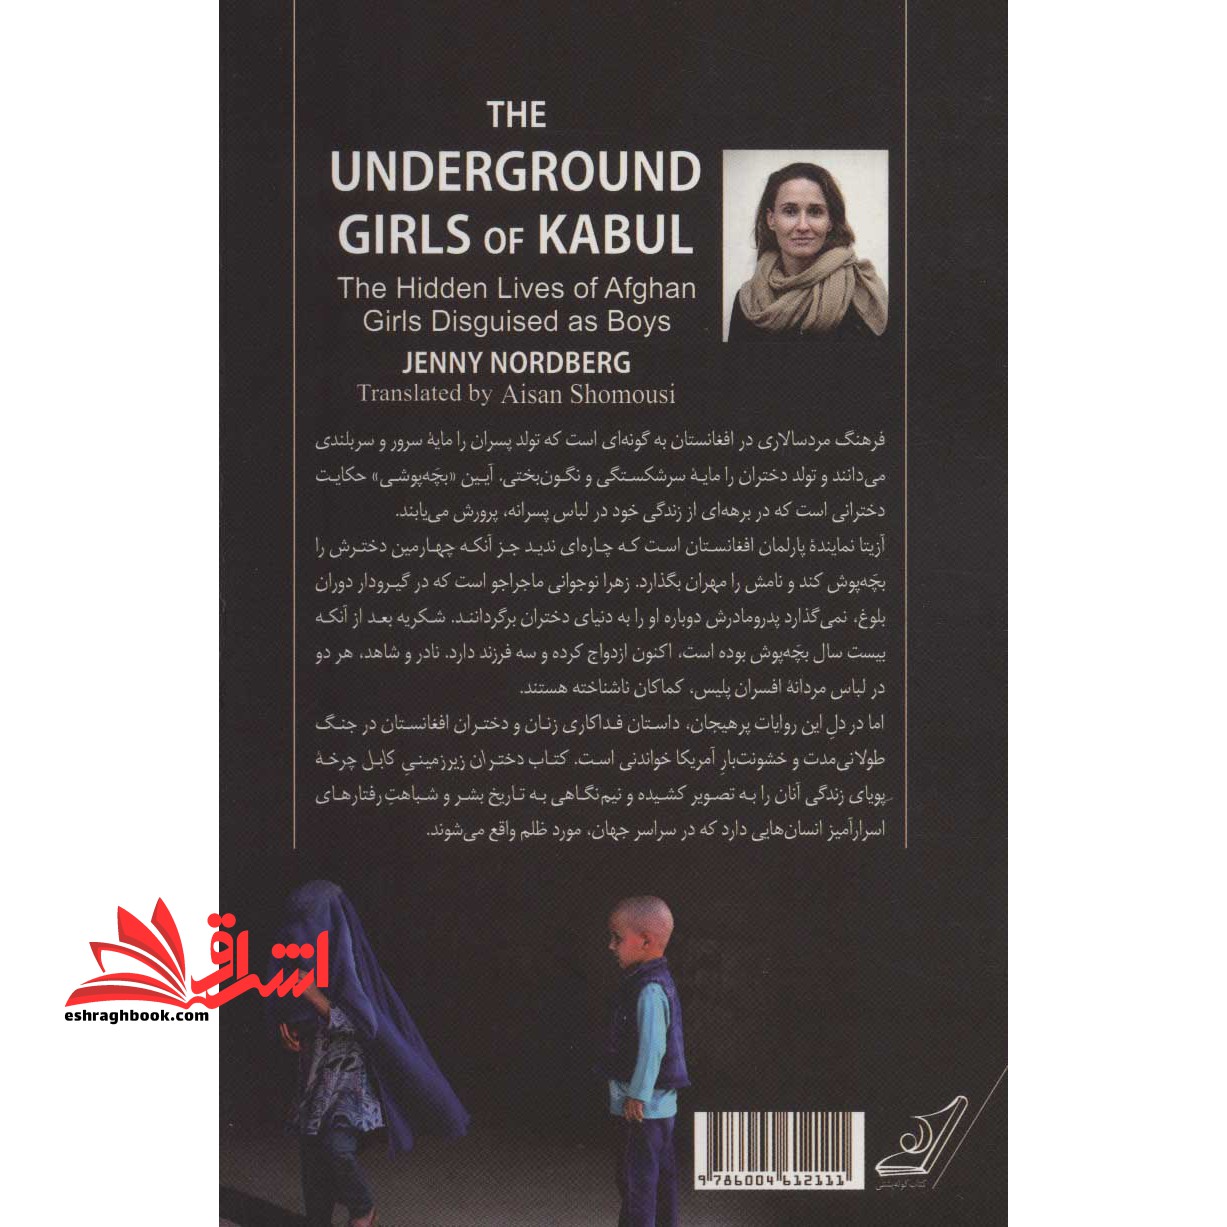 کتاب دختران زیر زمینی کابل - زندگی پنهان دختران افغانستان در پوشش پسرانه